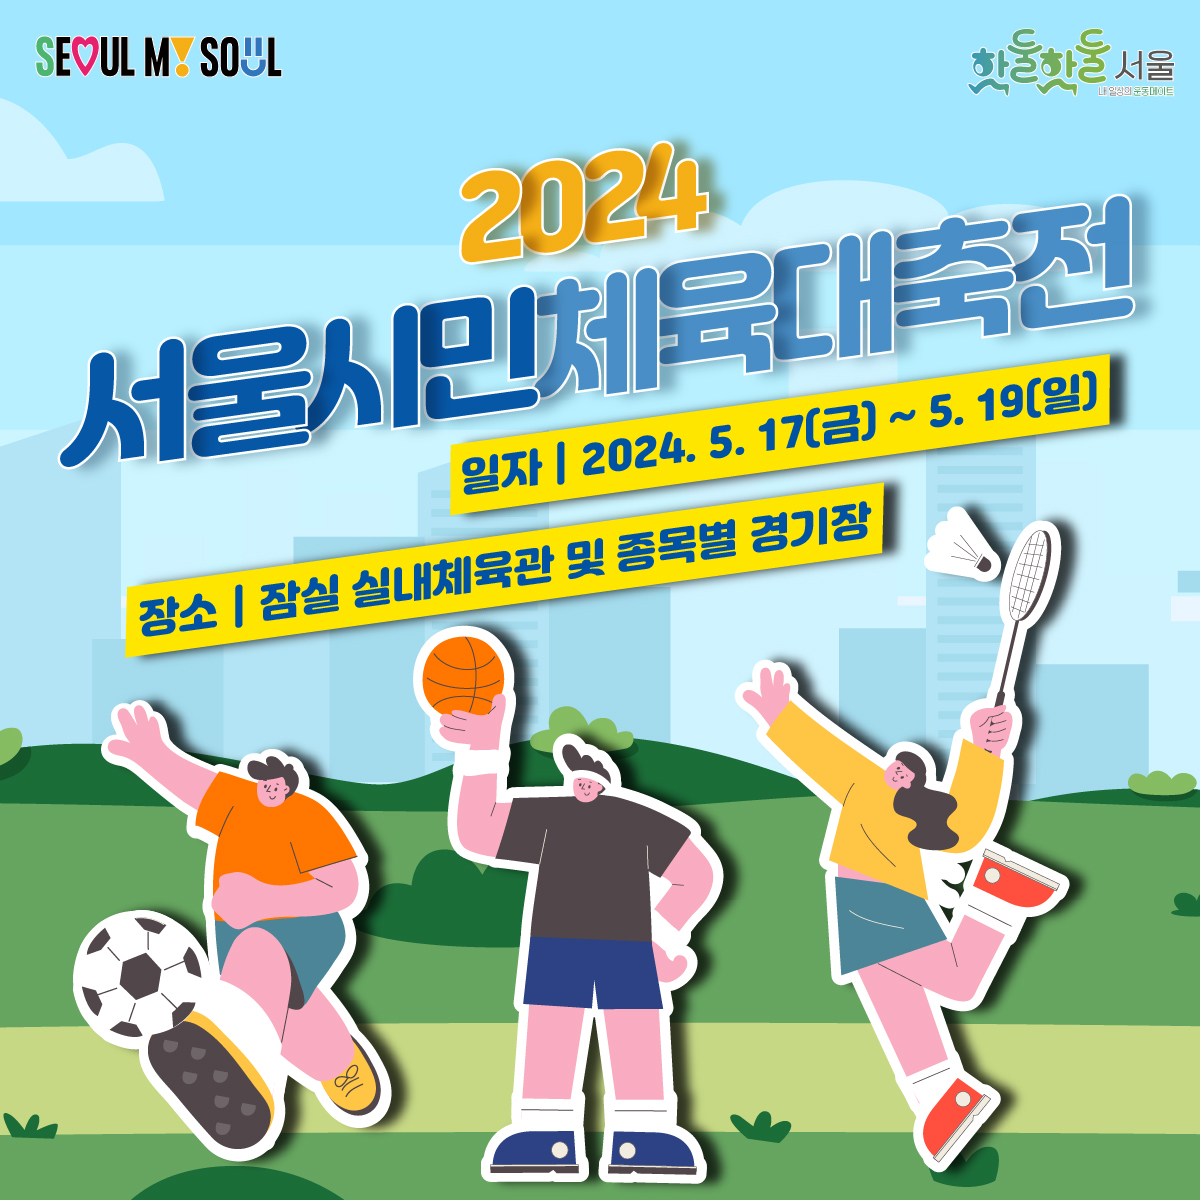 서울 시민 누구나 즐기는 스포츠 축제!
2024 서울시민체육대축전이 열립니다